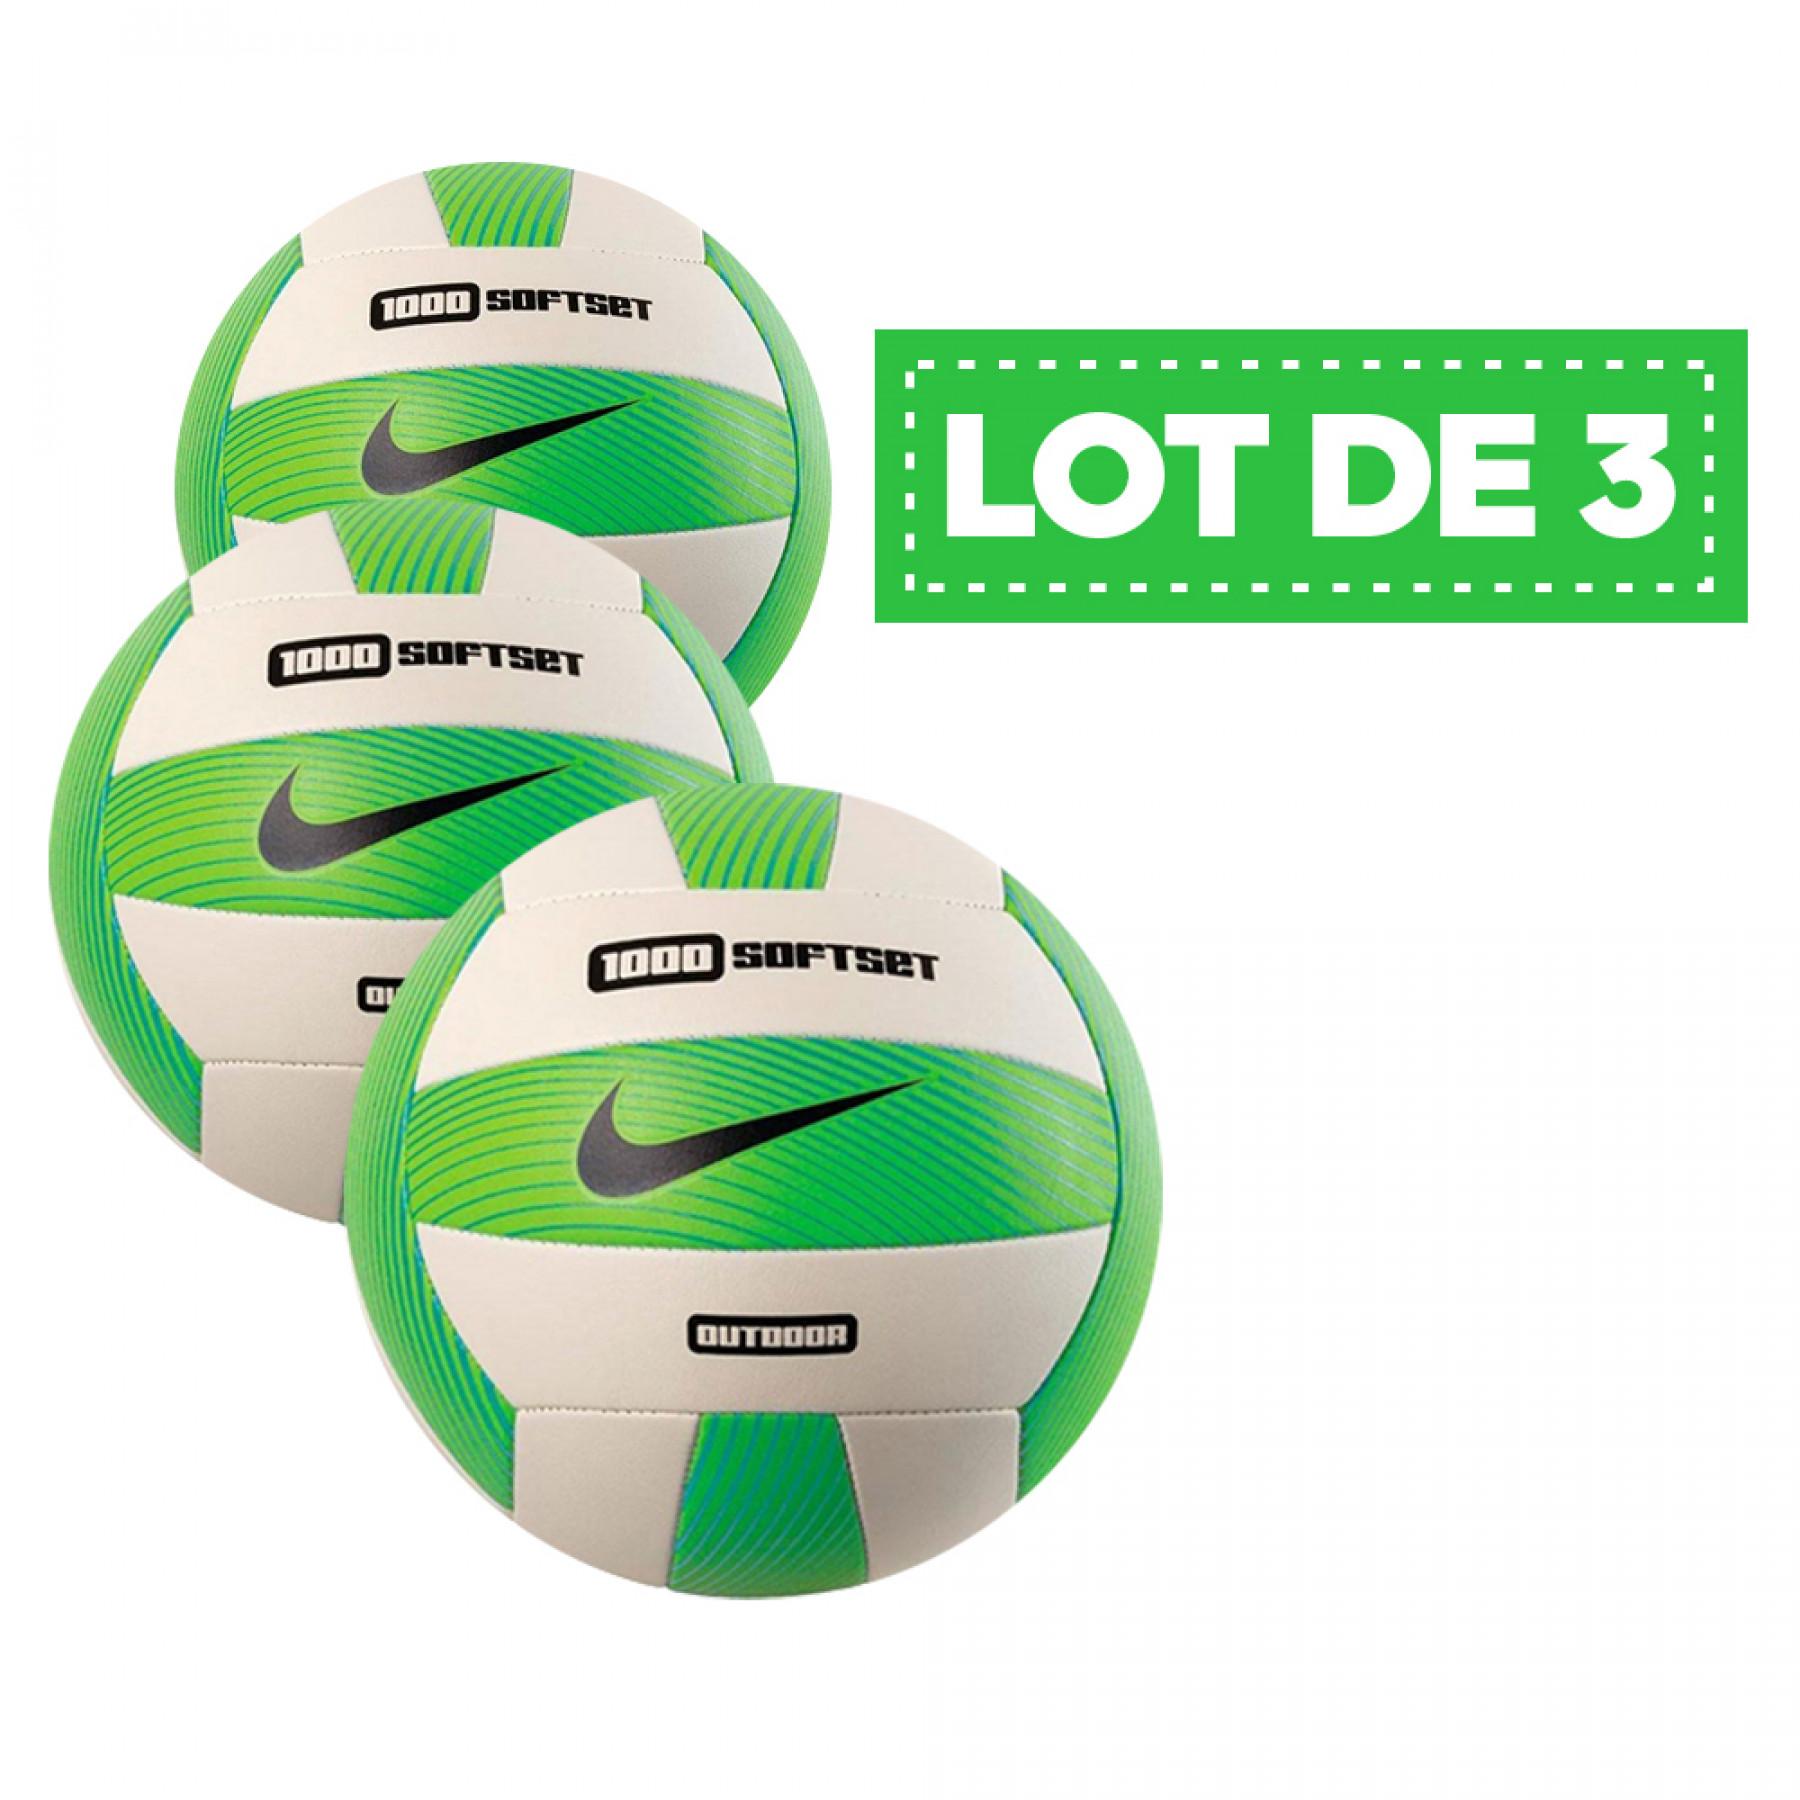 Lot de 3 ballons Nike 1000 softset outdoor vert/blanc